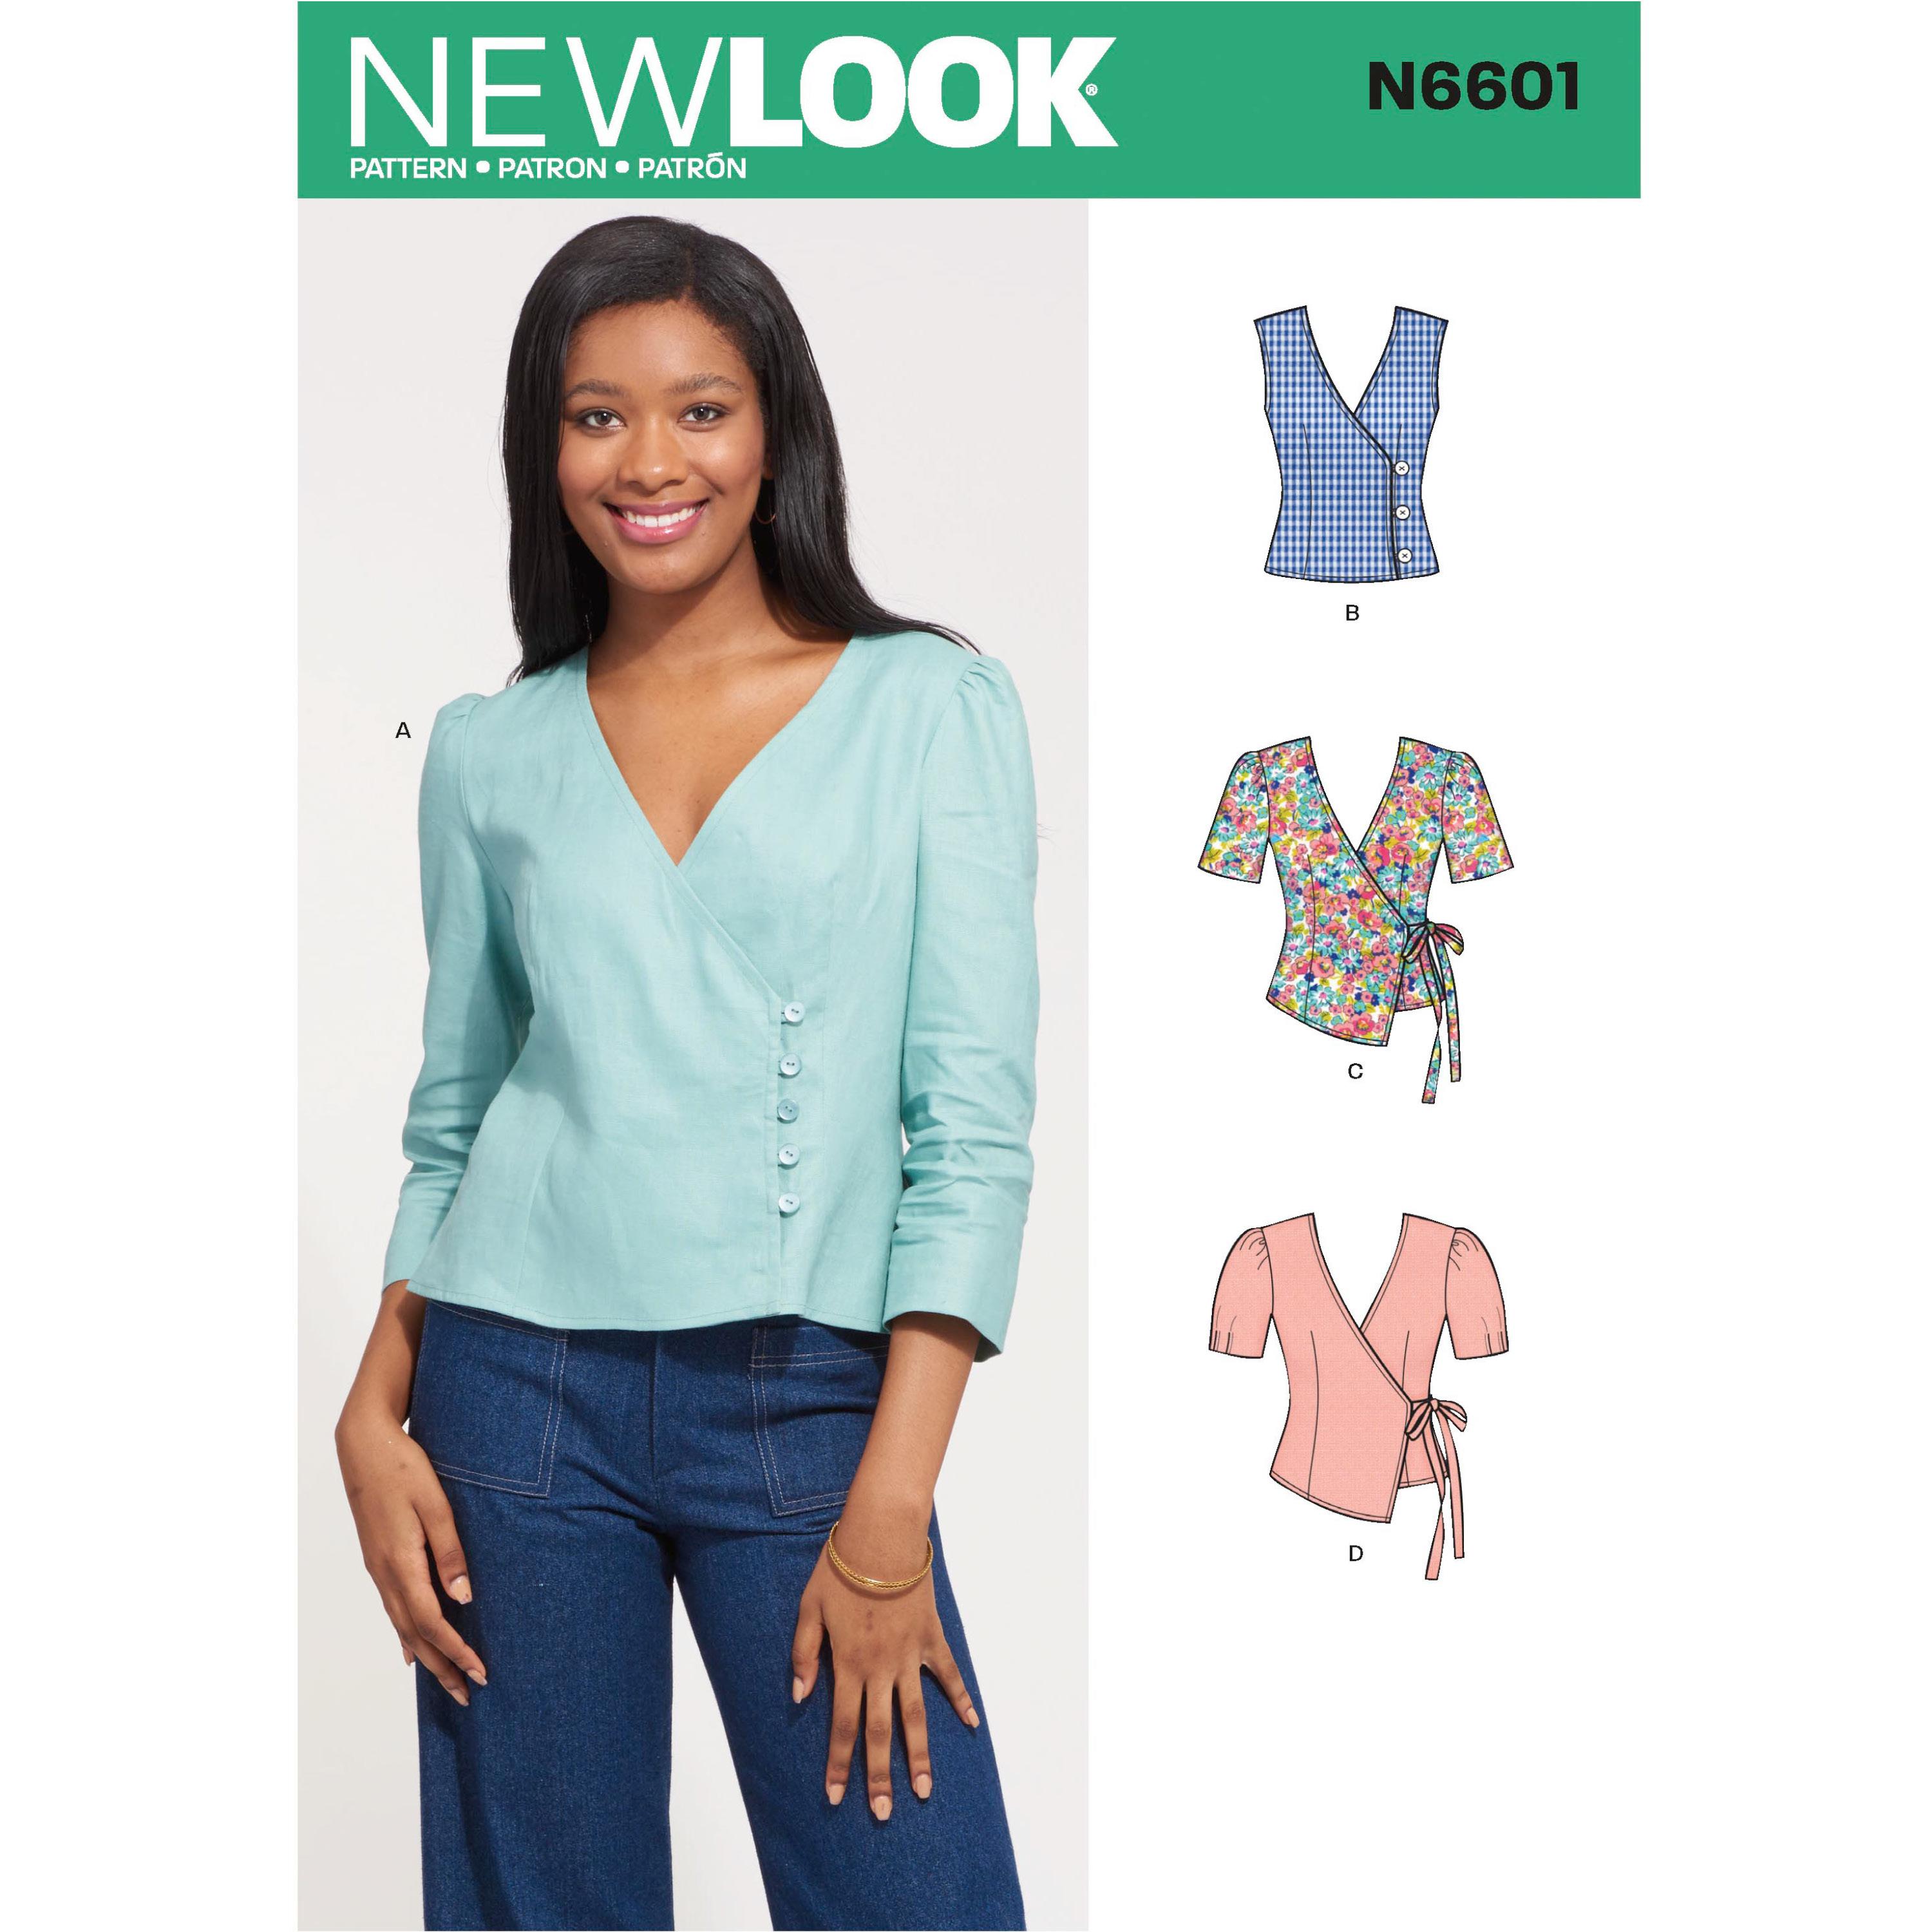 NewLook Sewing Pattern N6601 Misses' Tops